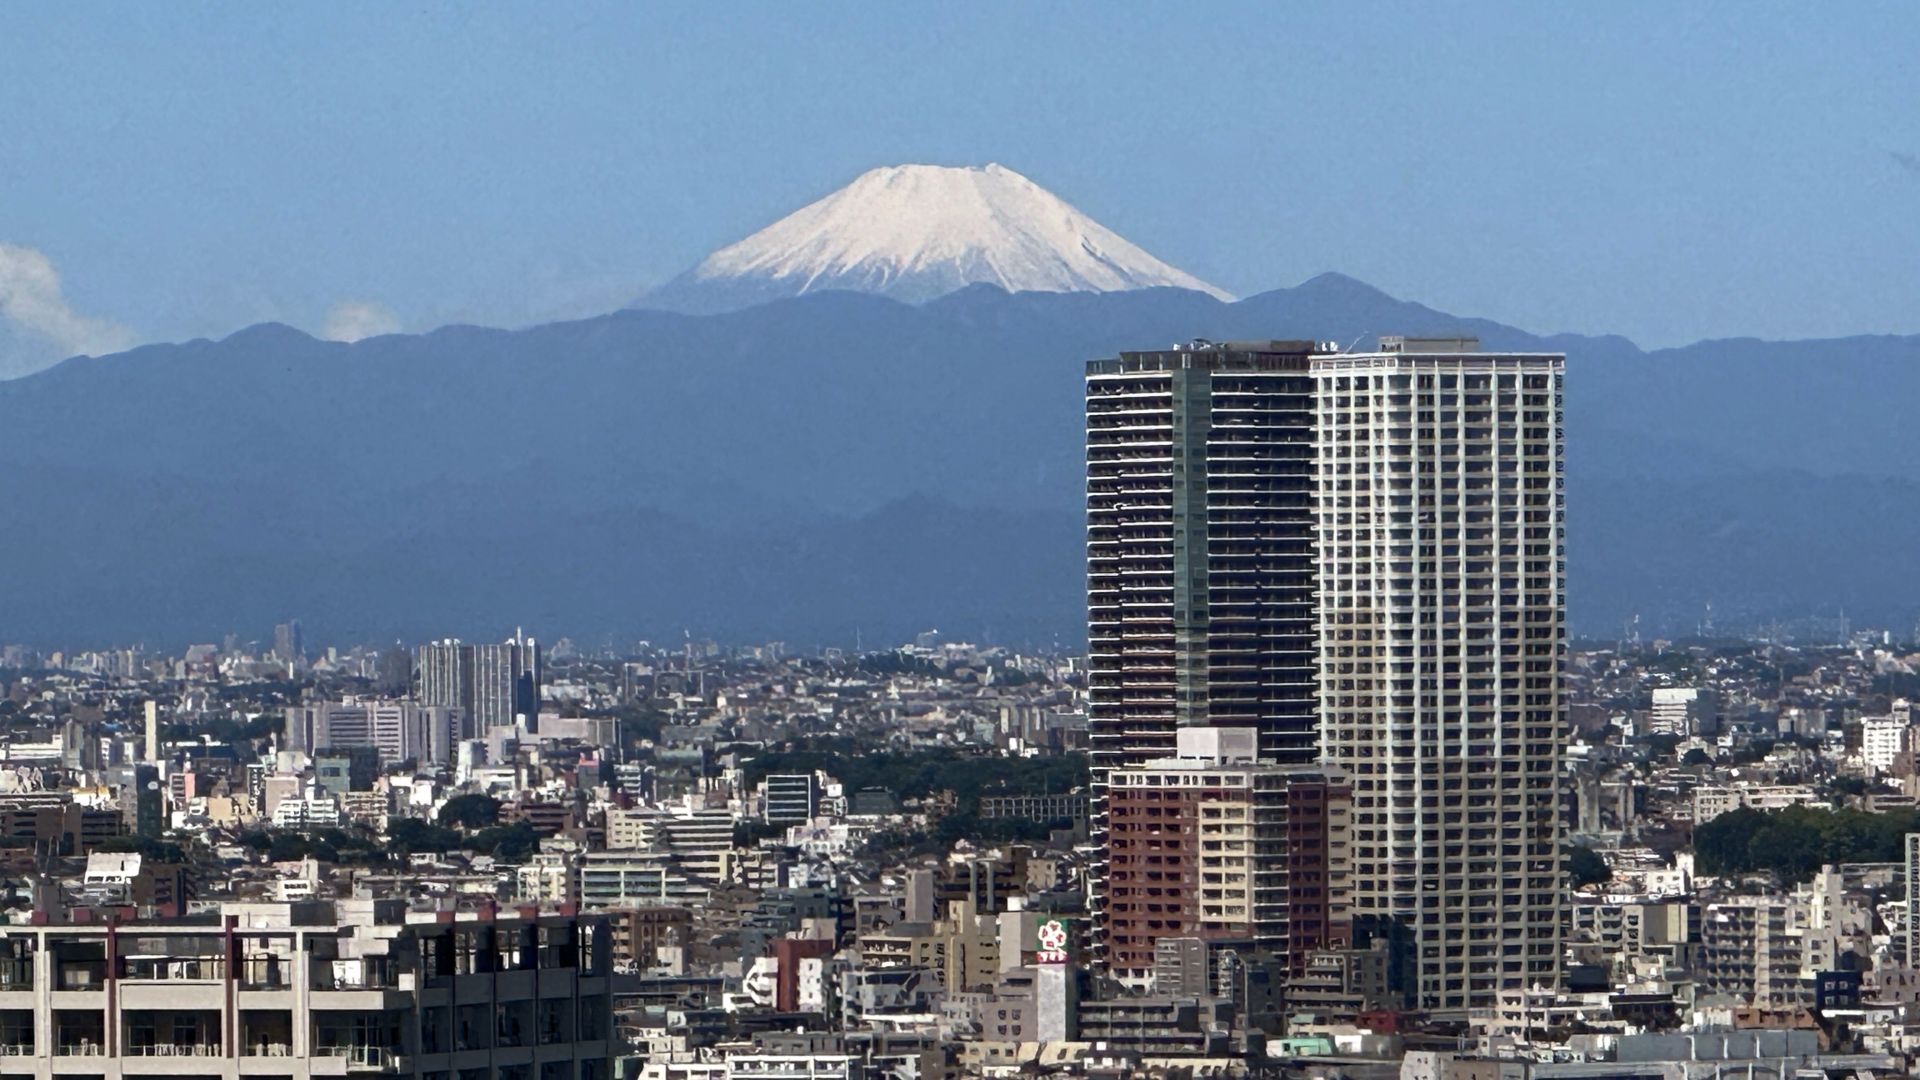 Der Fuji mit Schneekrone im Mai.